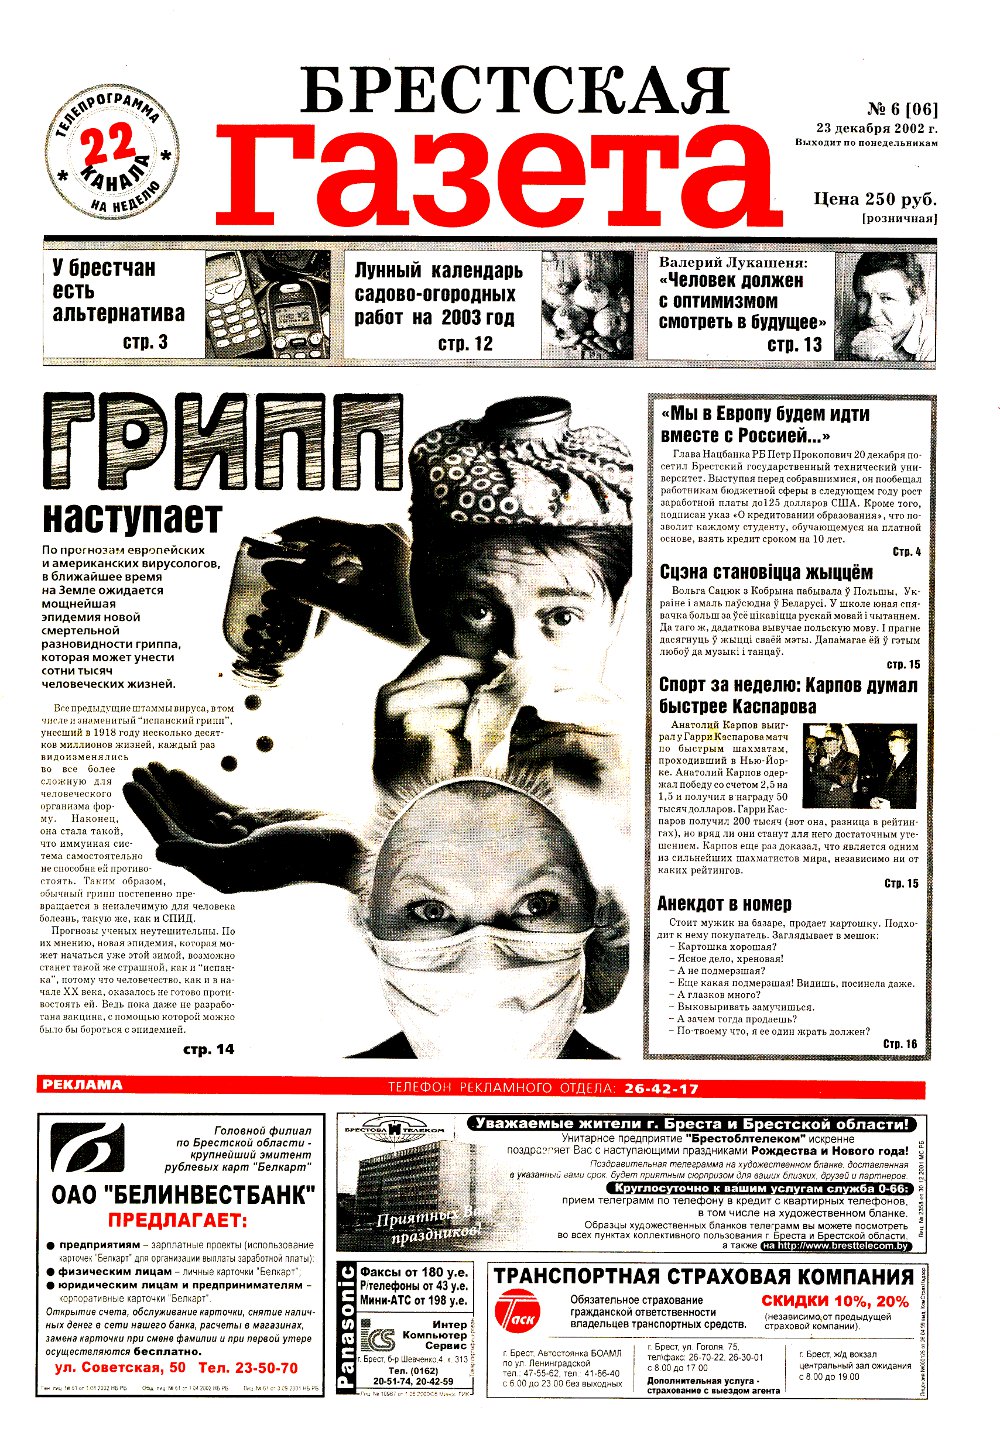 Брестская газета 6 (6) 2002